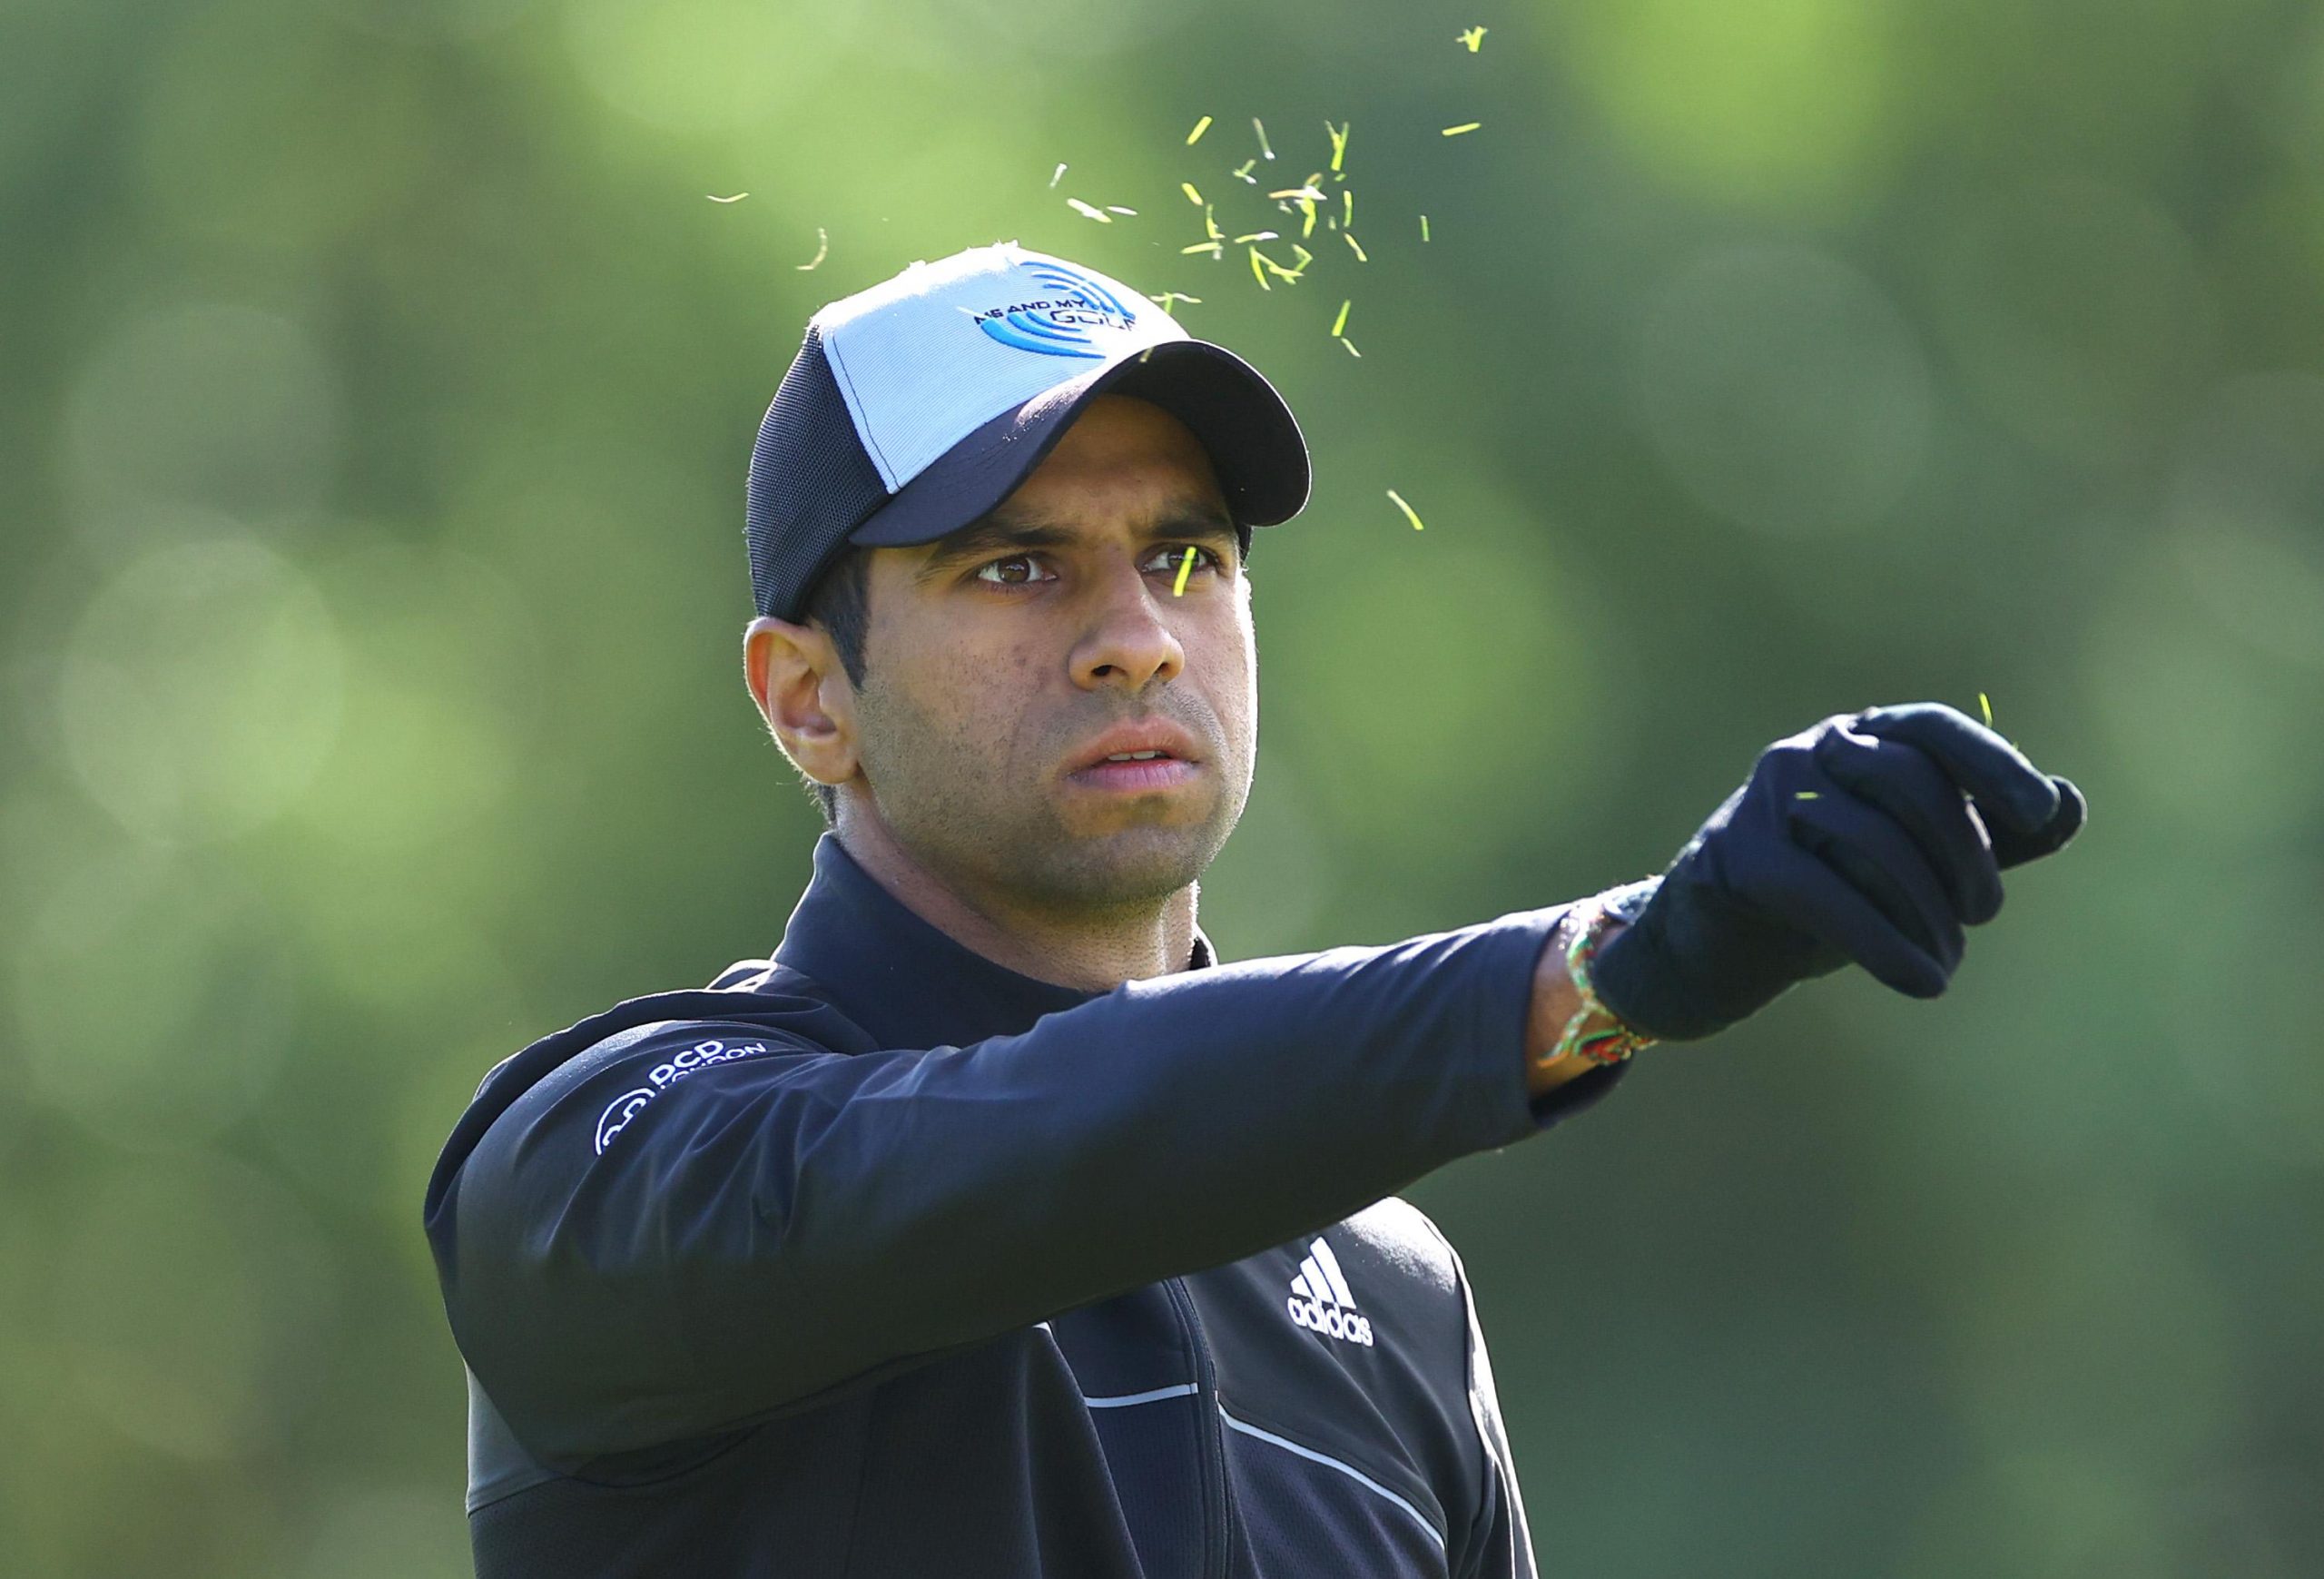 Aaron Rai takes 2-shot lead into the final round; Sharma 67th in Irish Open